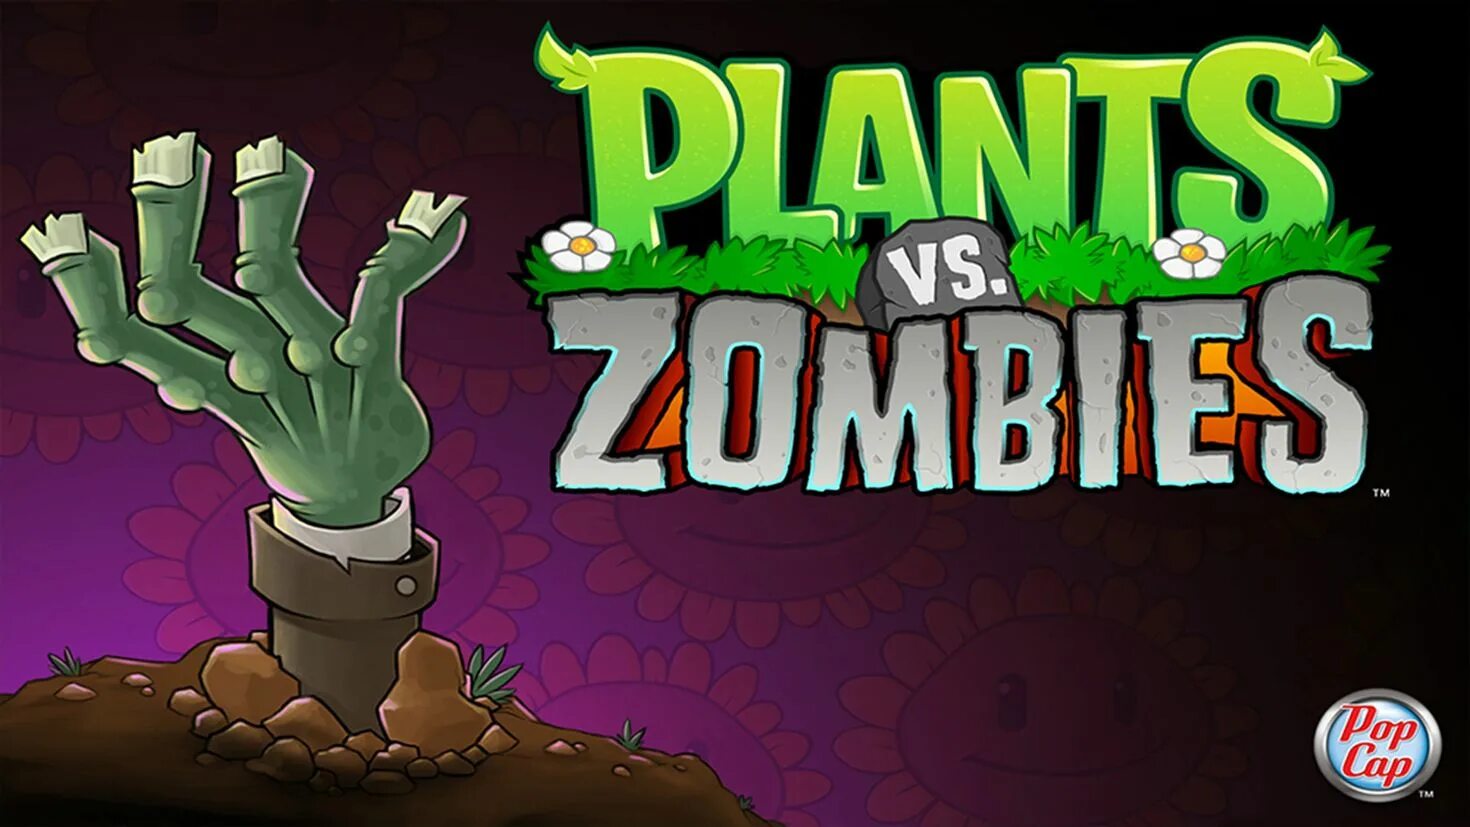 Растения против зомби превью. Игра плантс зомби. Растения против зомби 2 превью. Plants vs Zombies мини игры. Против растений 4 часть